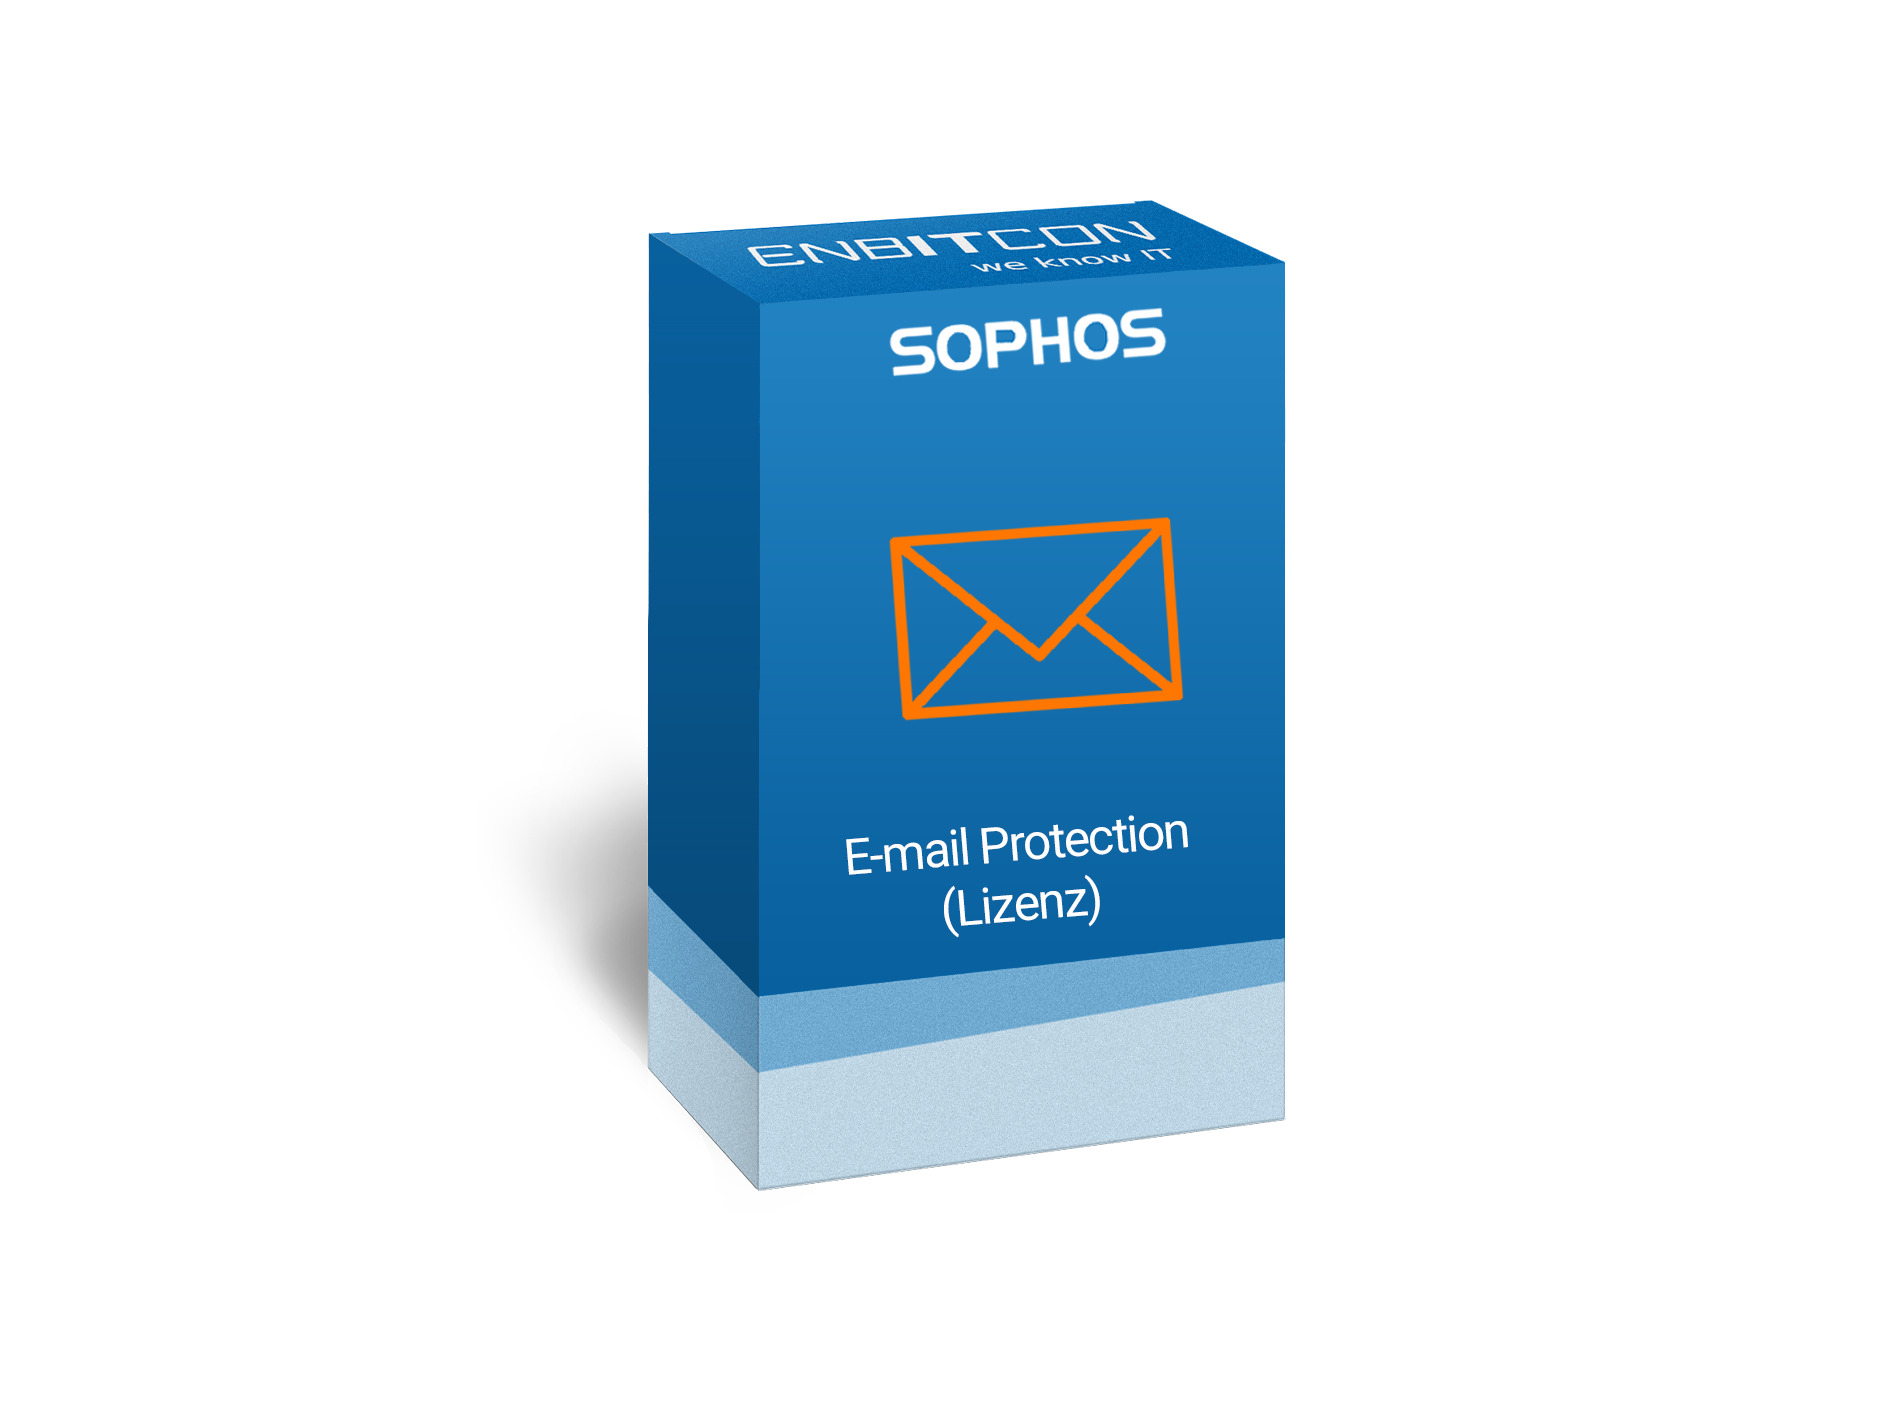 Sophos Email Protection Lizenz Vorschaubild bestehend aus einem blauen Schild, indem sich ein orangener Brief befindet